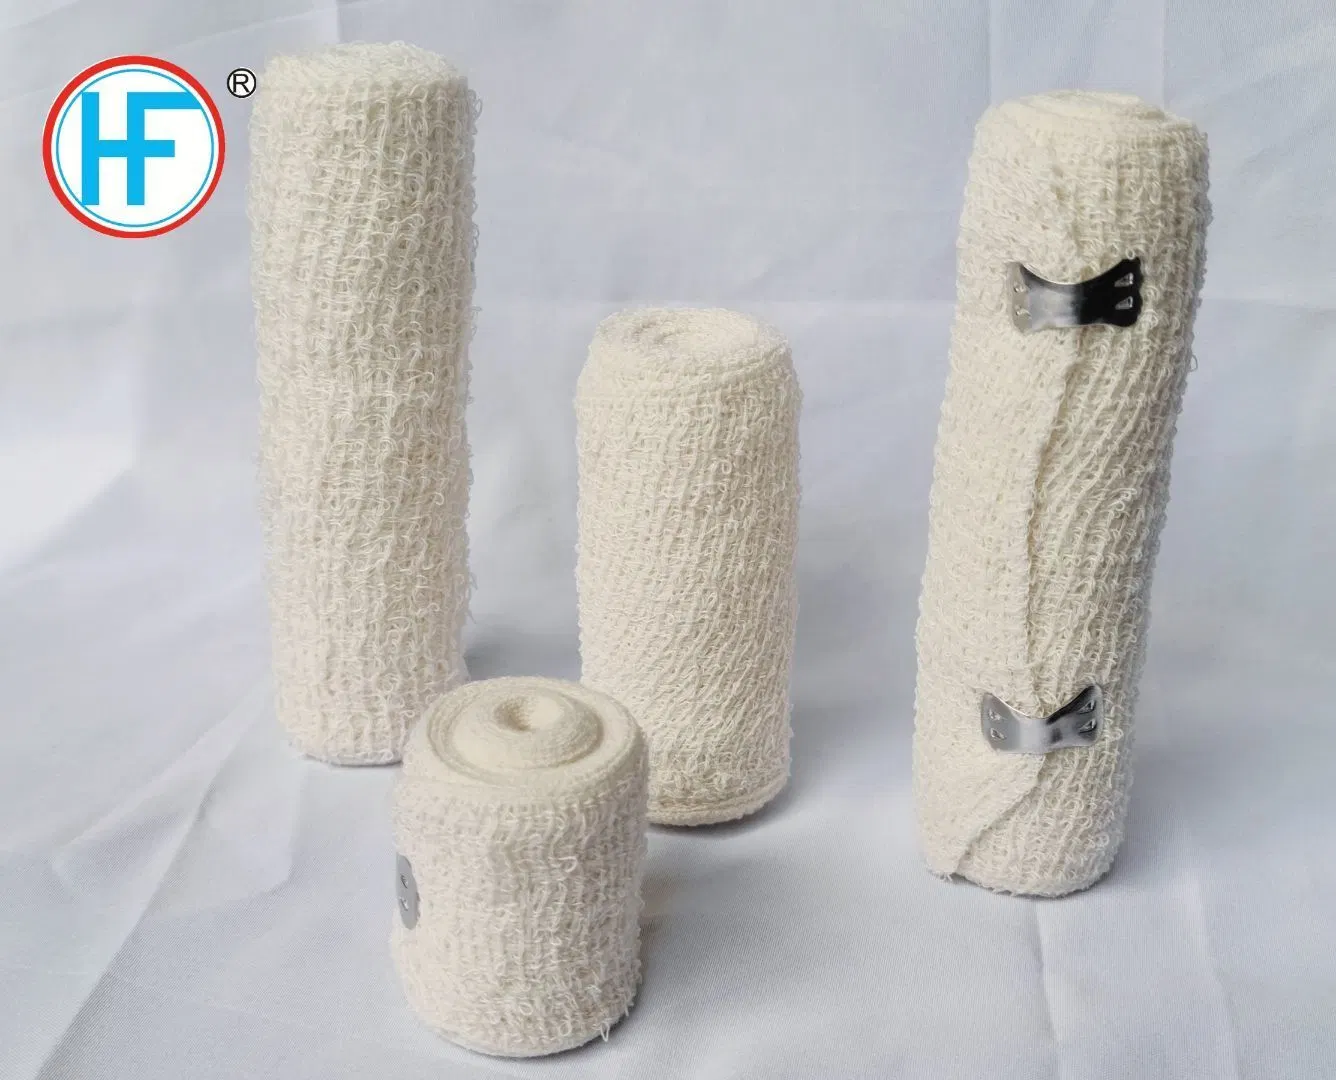 Alimentação hospitalar algodão descartável spandex bandagem crepe elástica natural